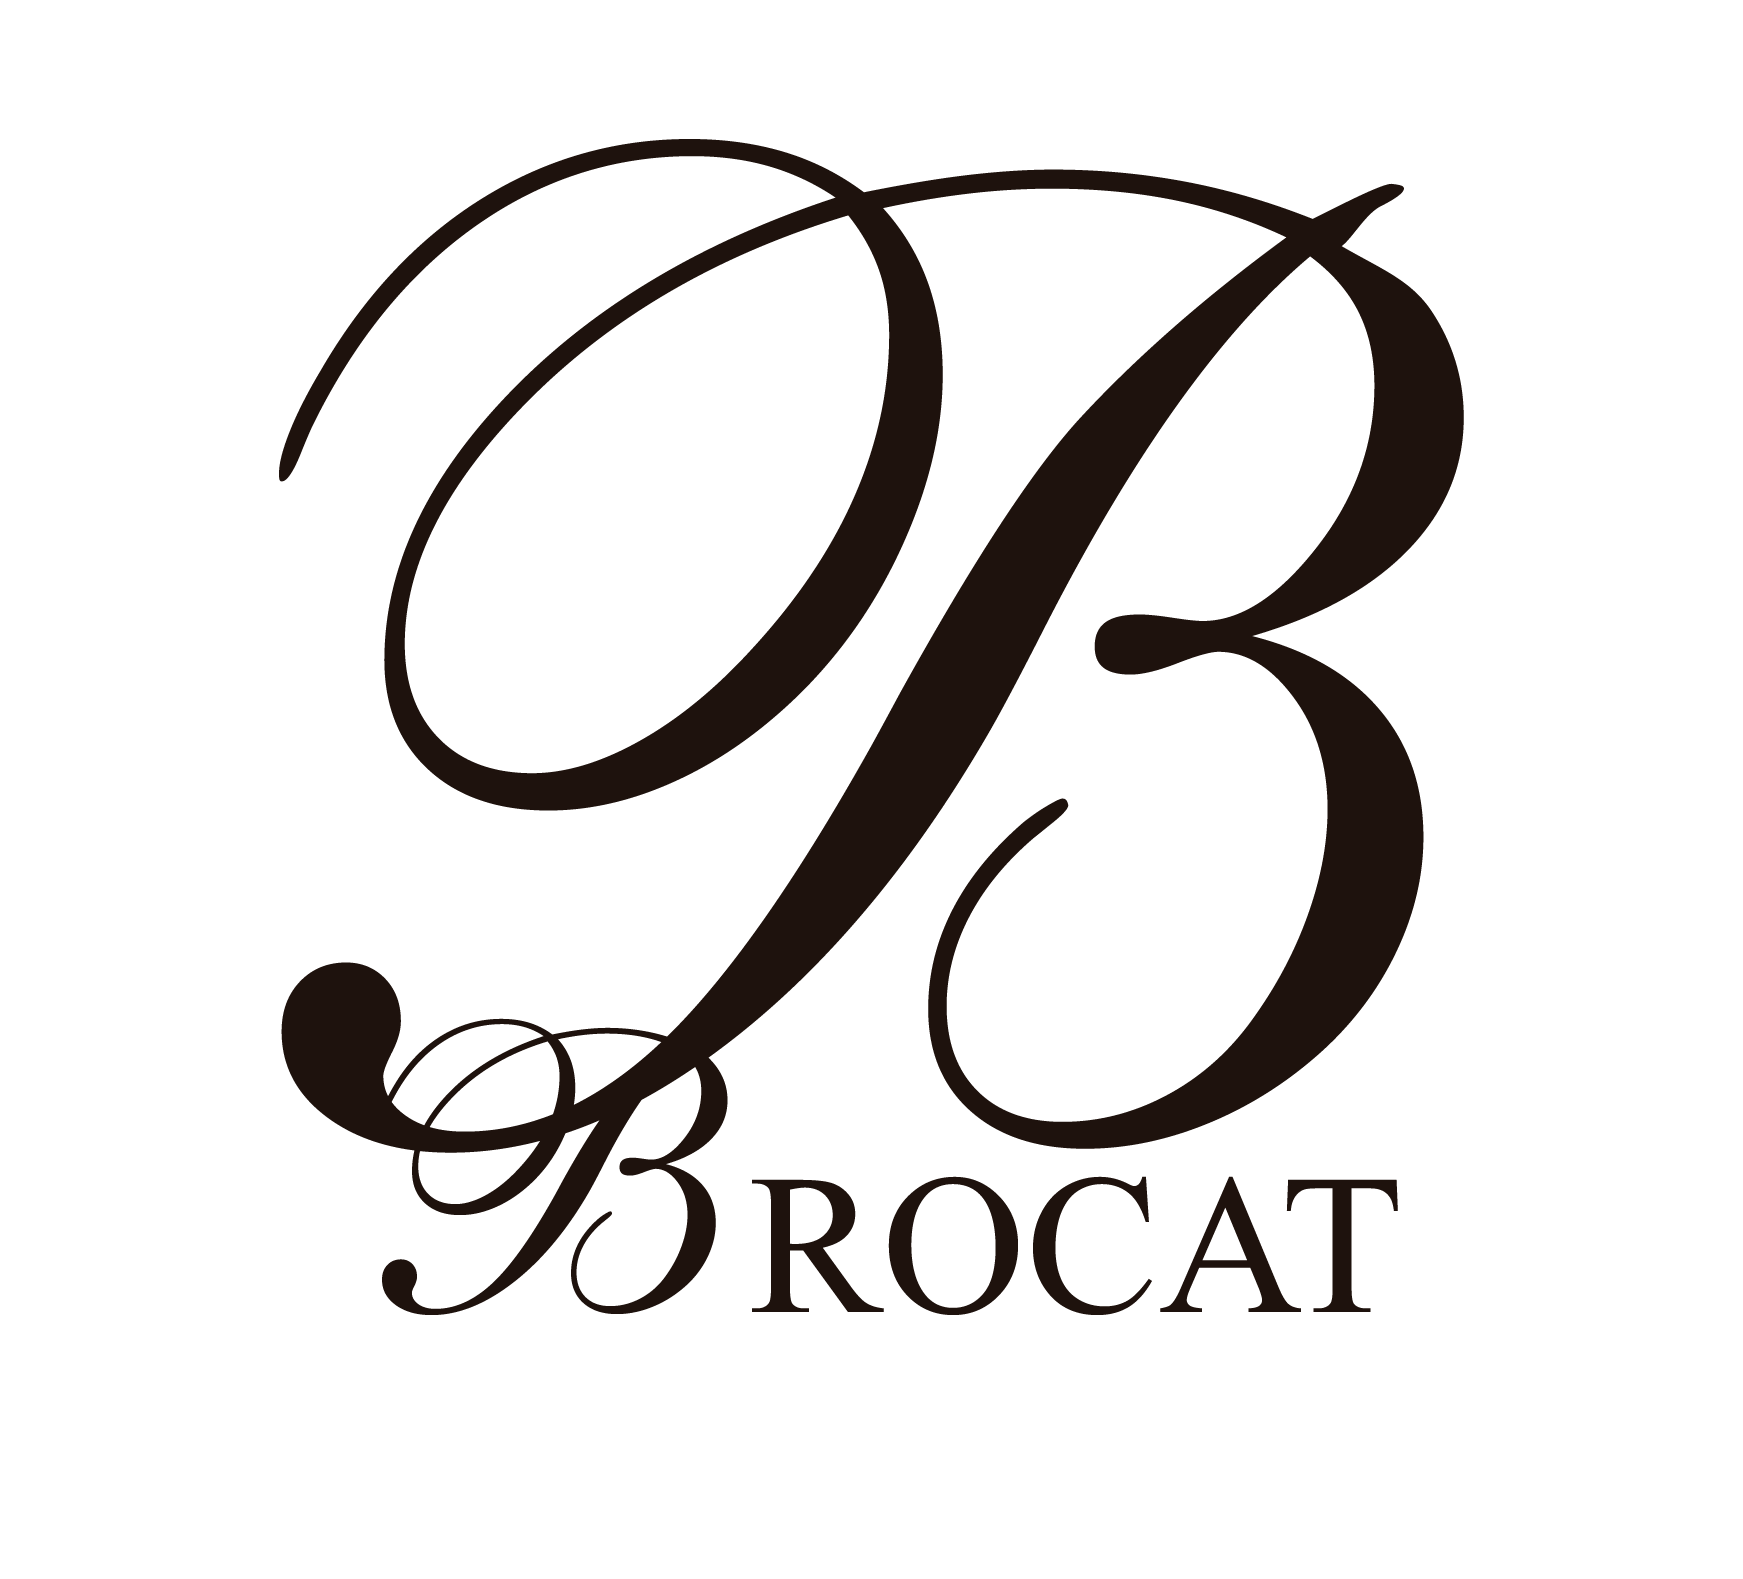 Brocat